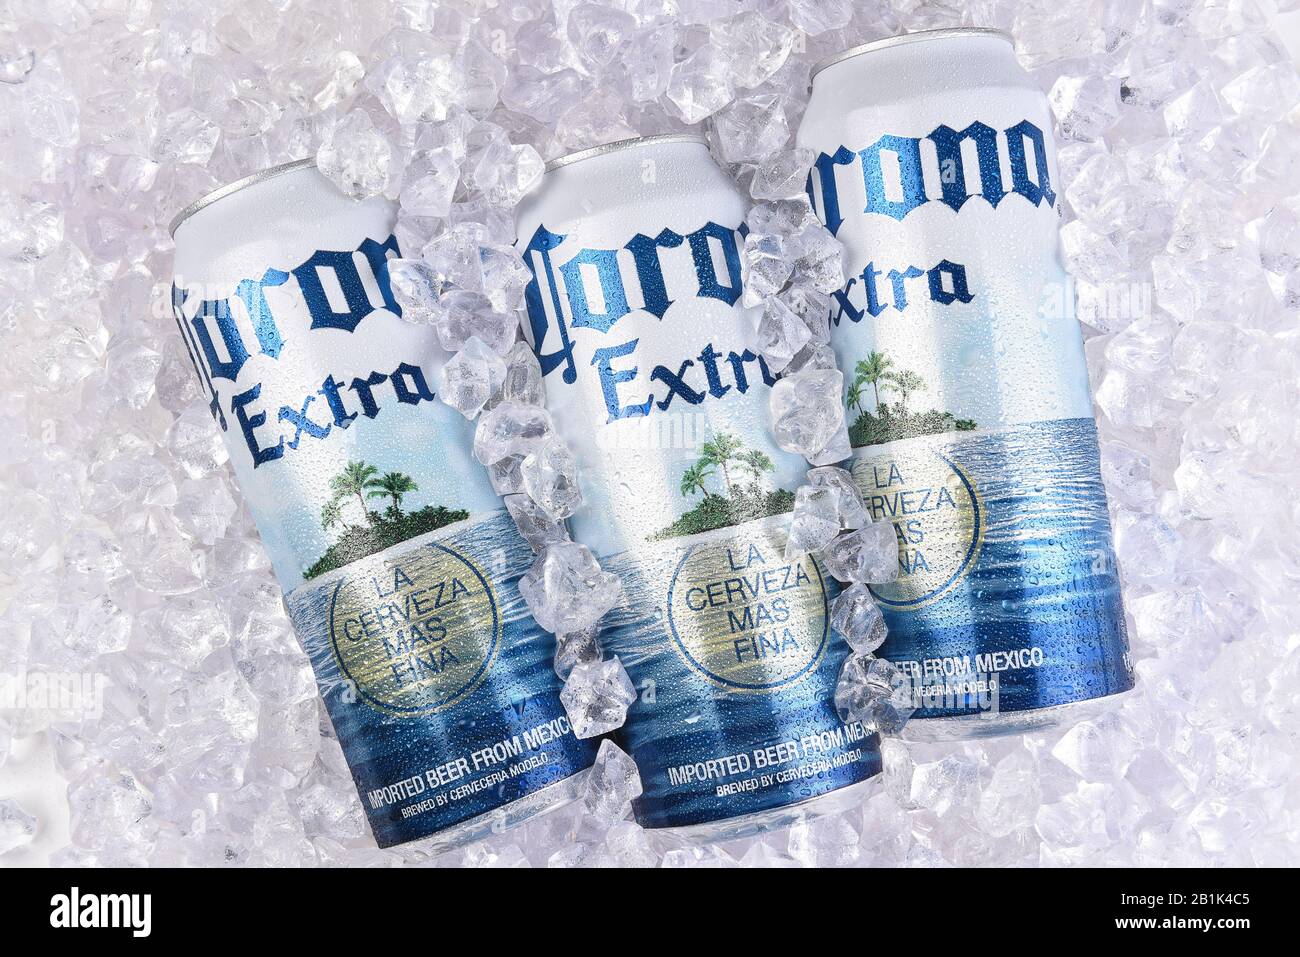 Irvine, CALIFORNIA - 29 MARZO 2018: Lattine di birra Corona Extra King in ghiaccio. Corona è l'importazione più popolare negli Stati Uniti. Foto Stock